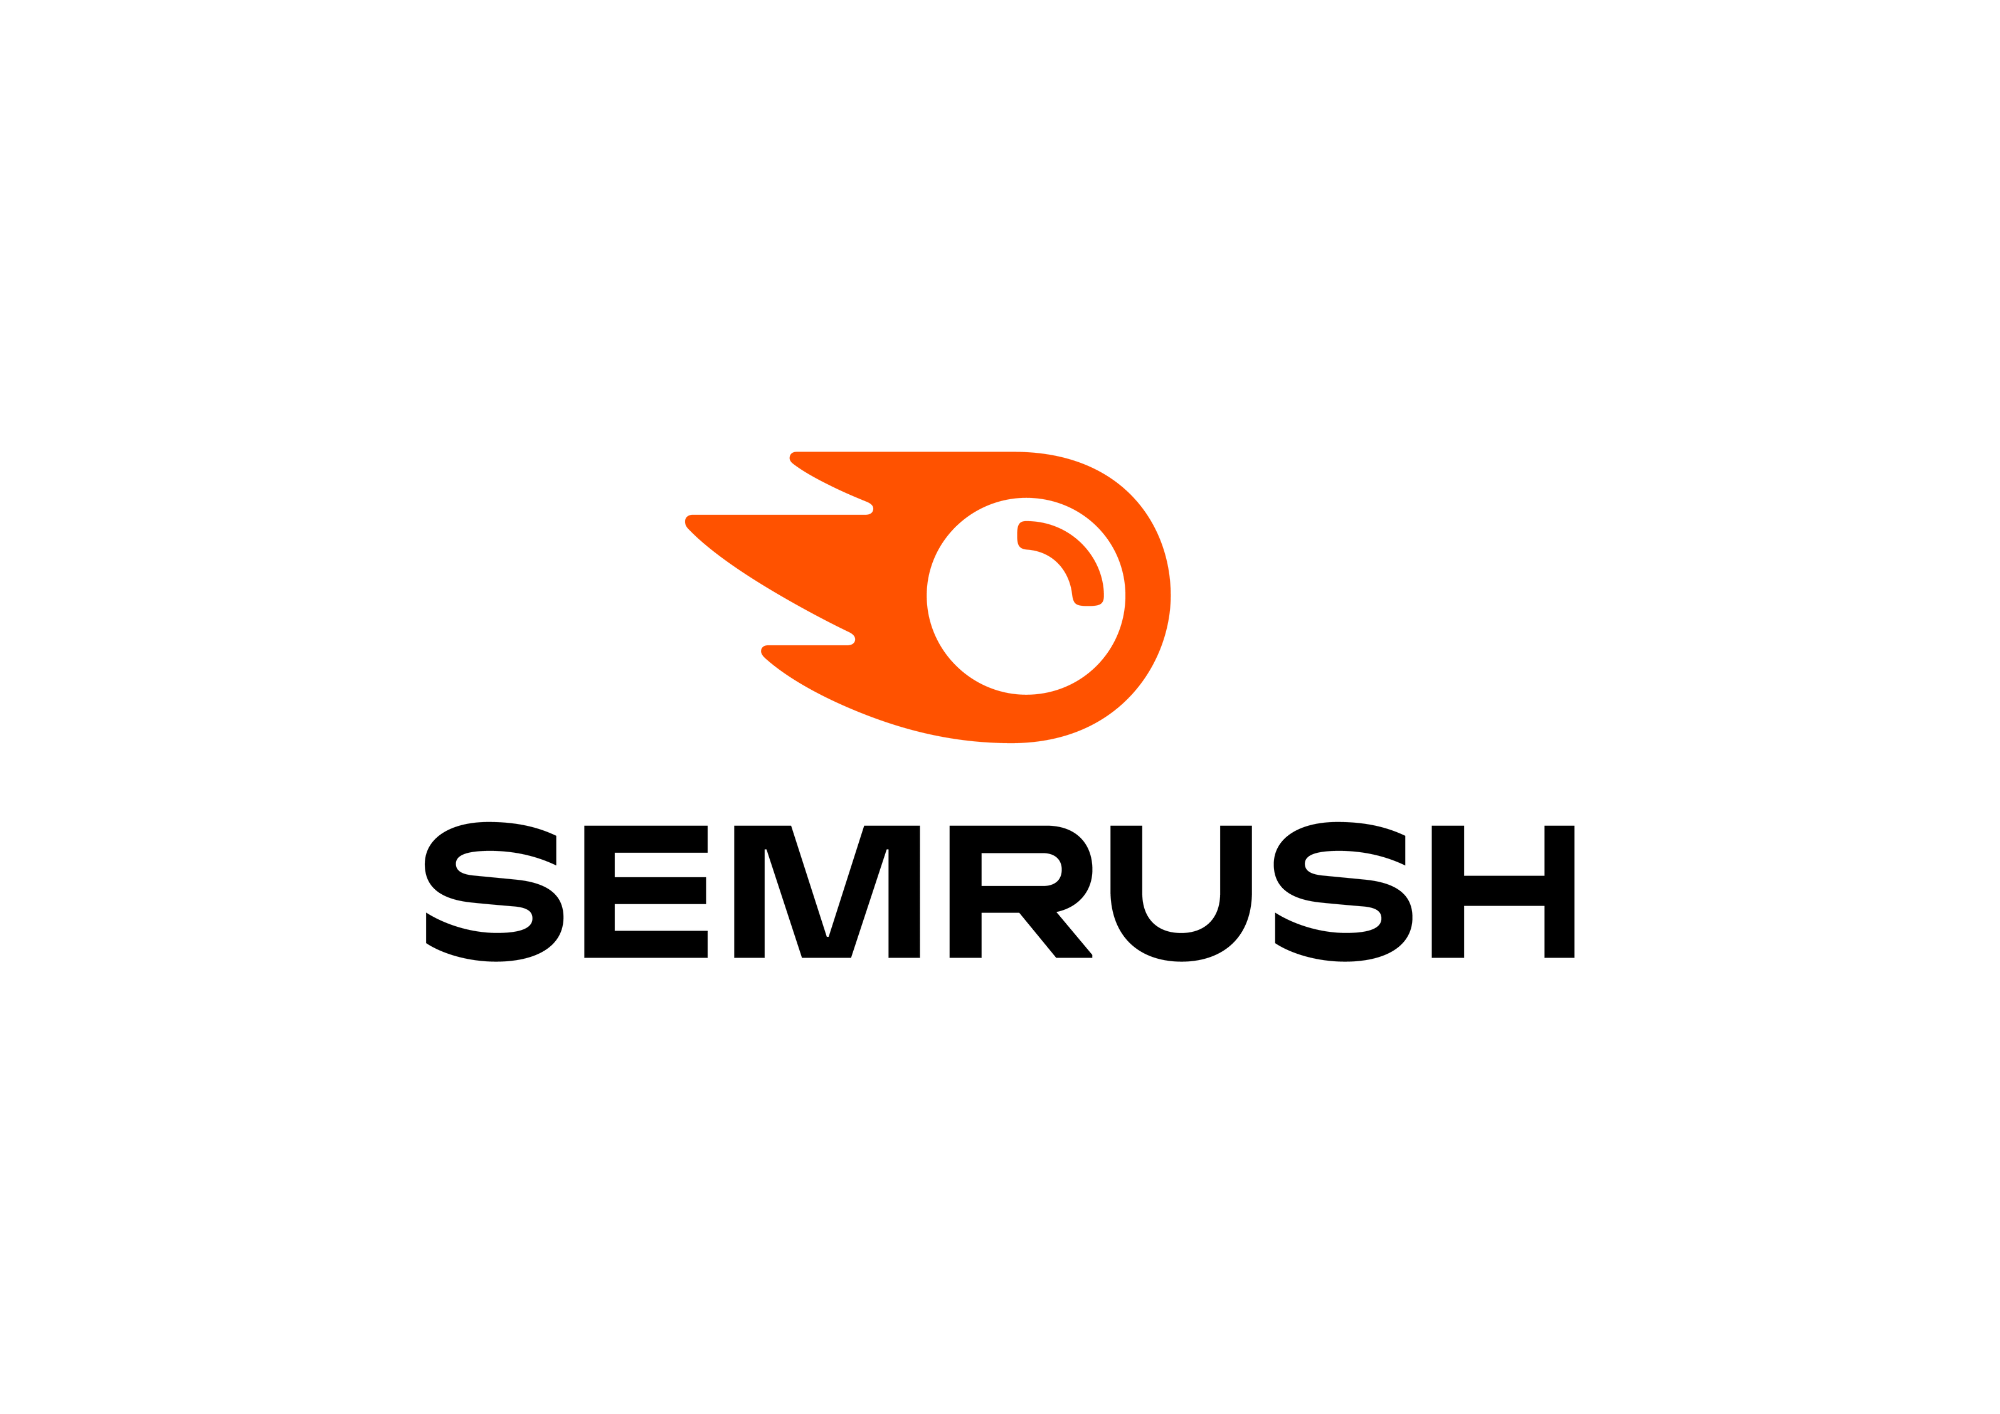 semrush logo transparent